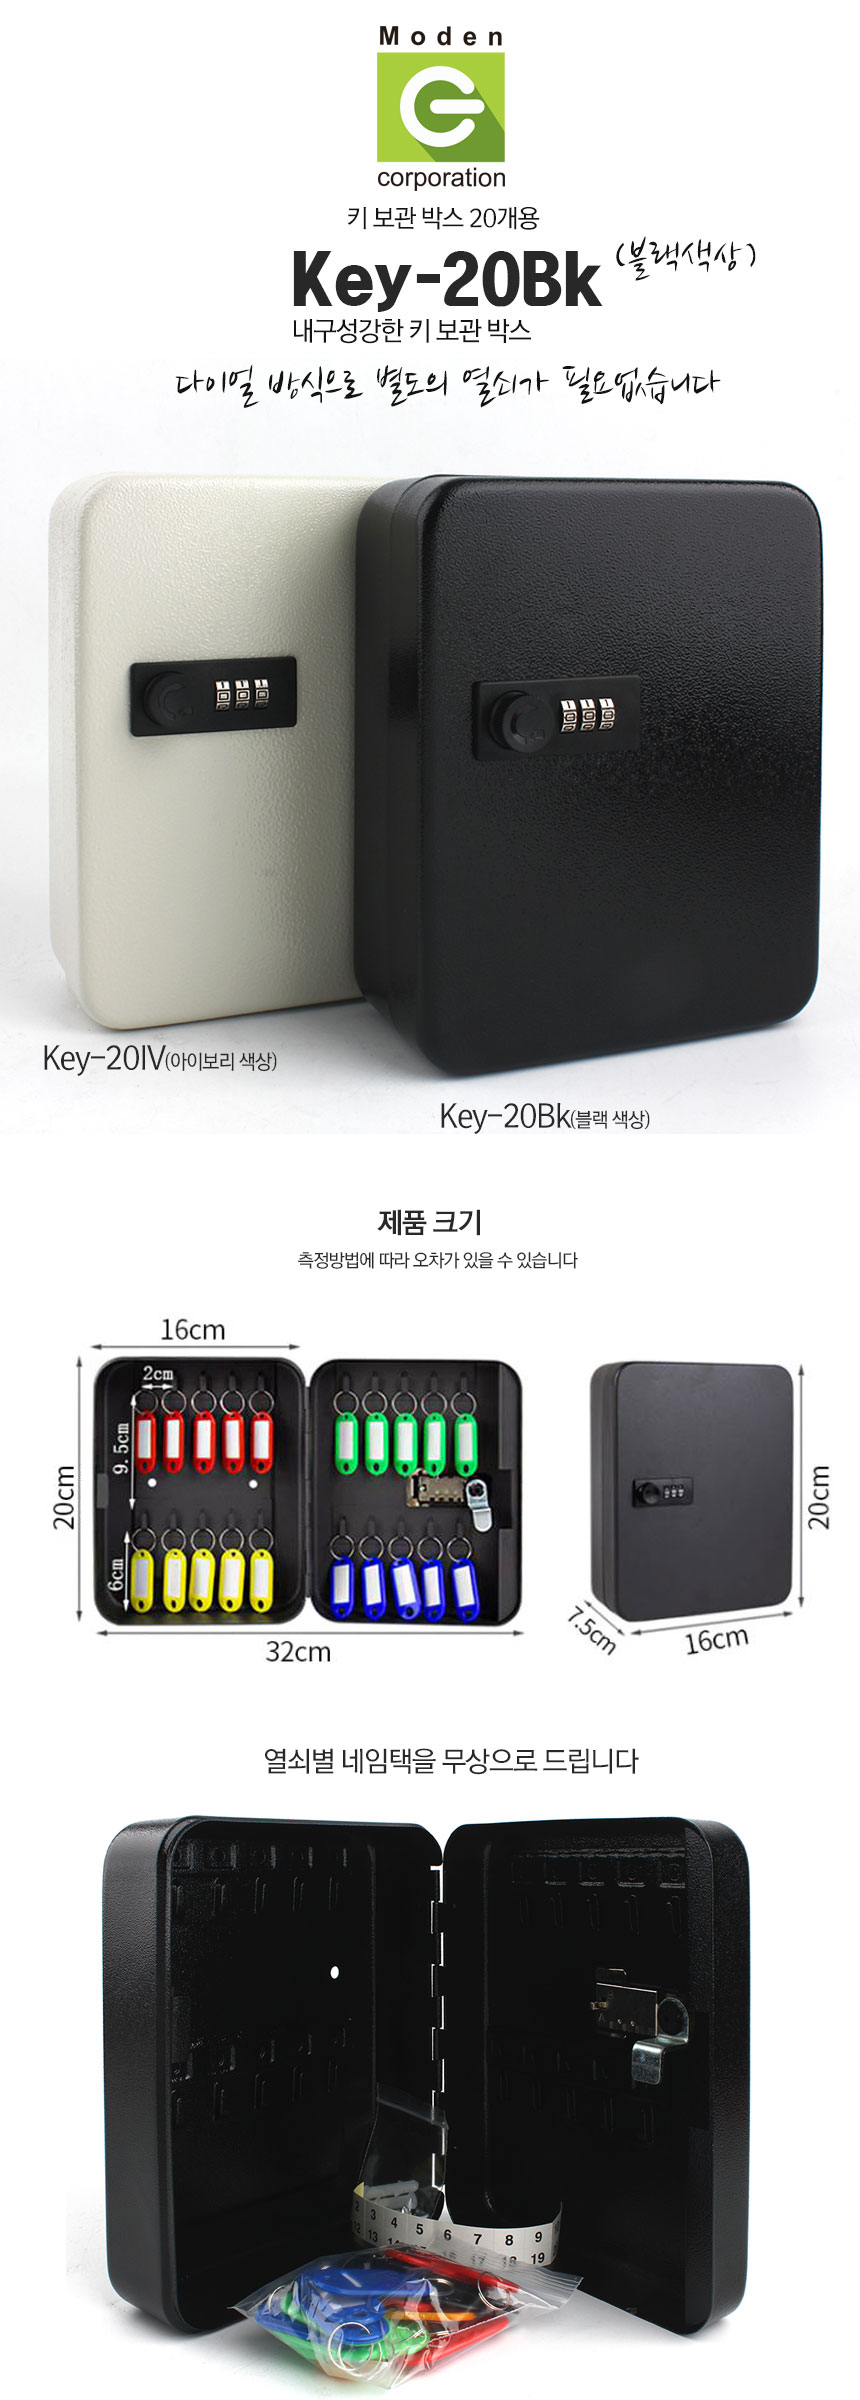 Key-20Bk-1.jpg